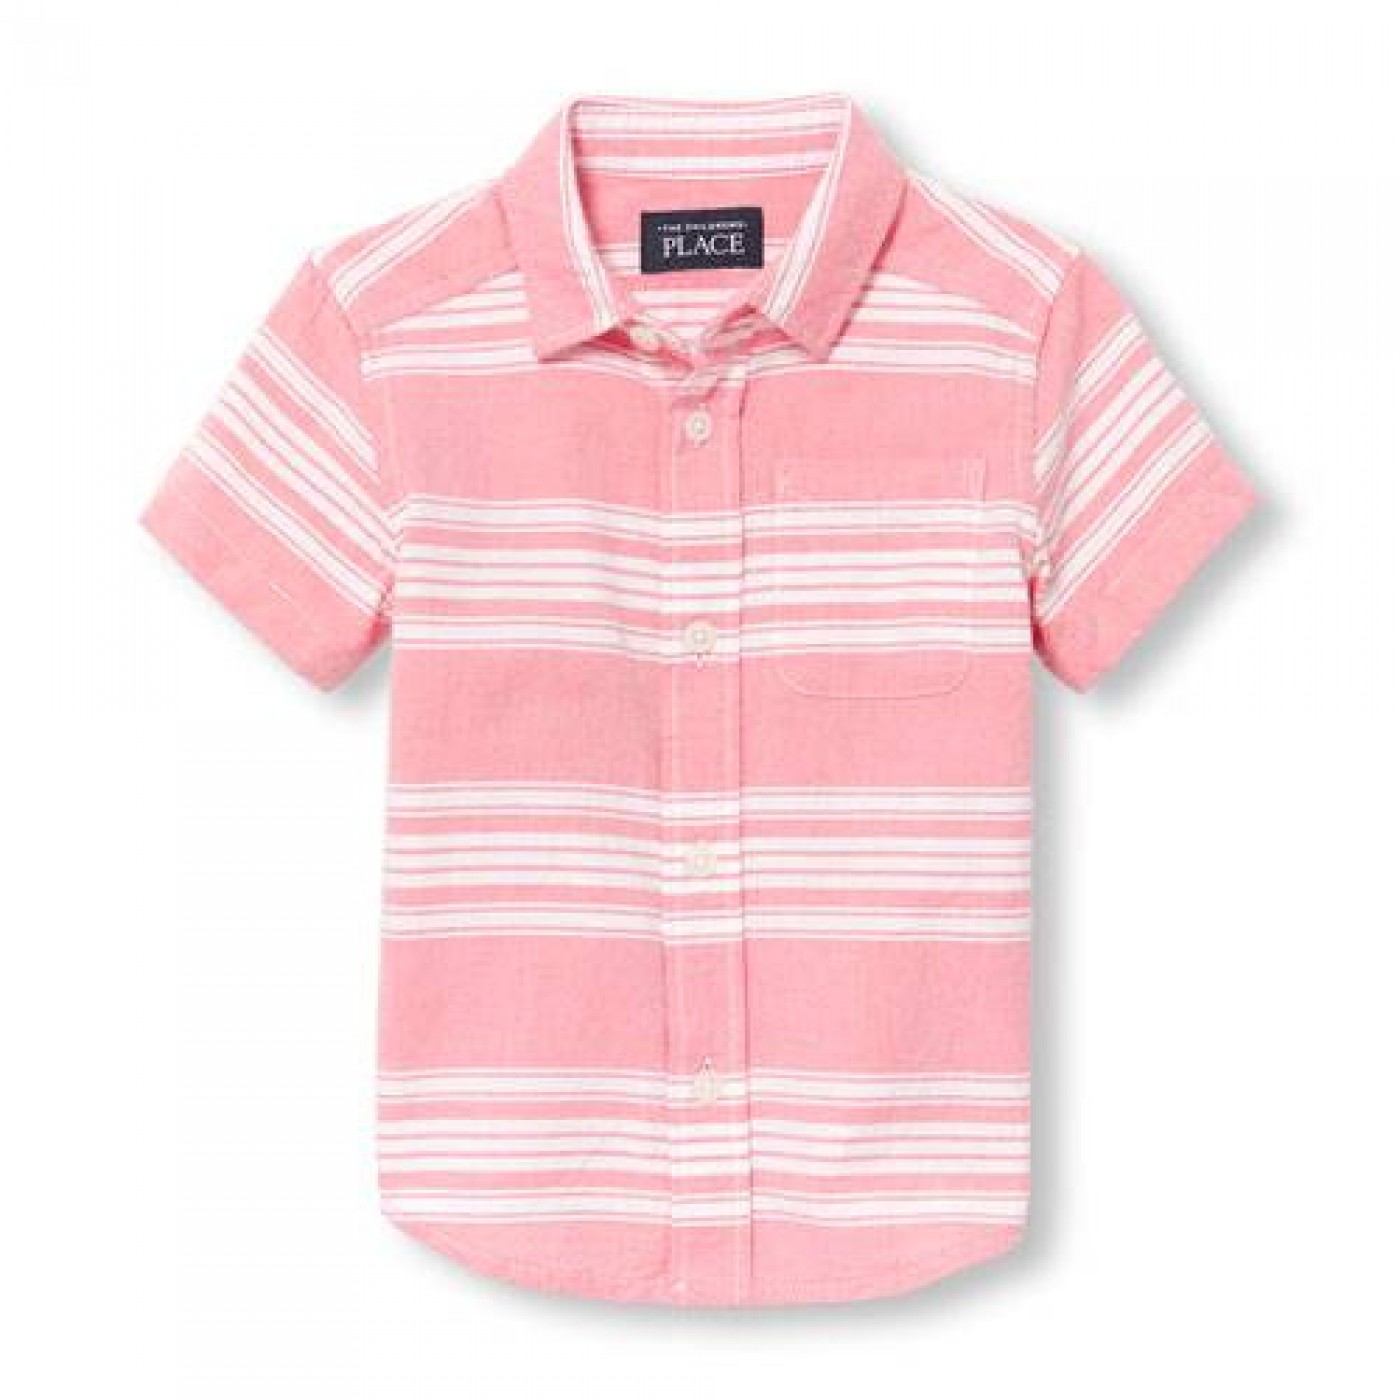 粉紅橫條襯衫